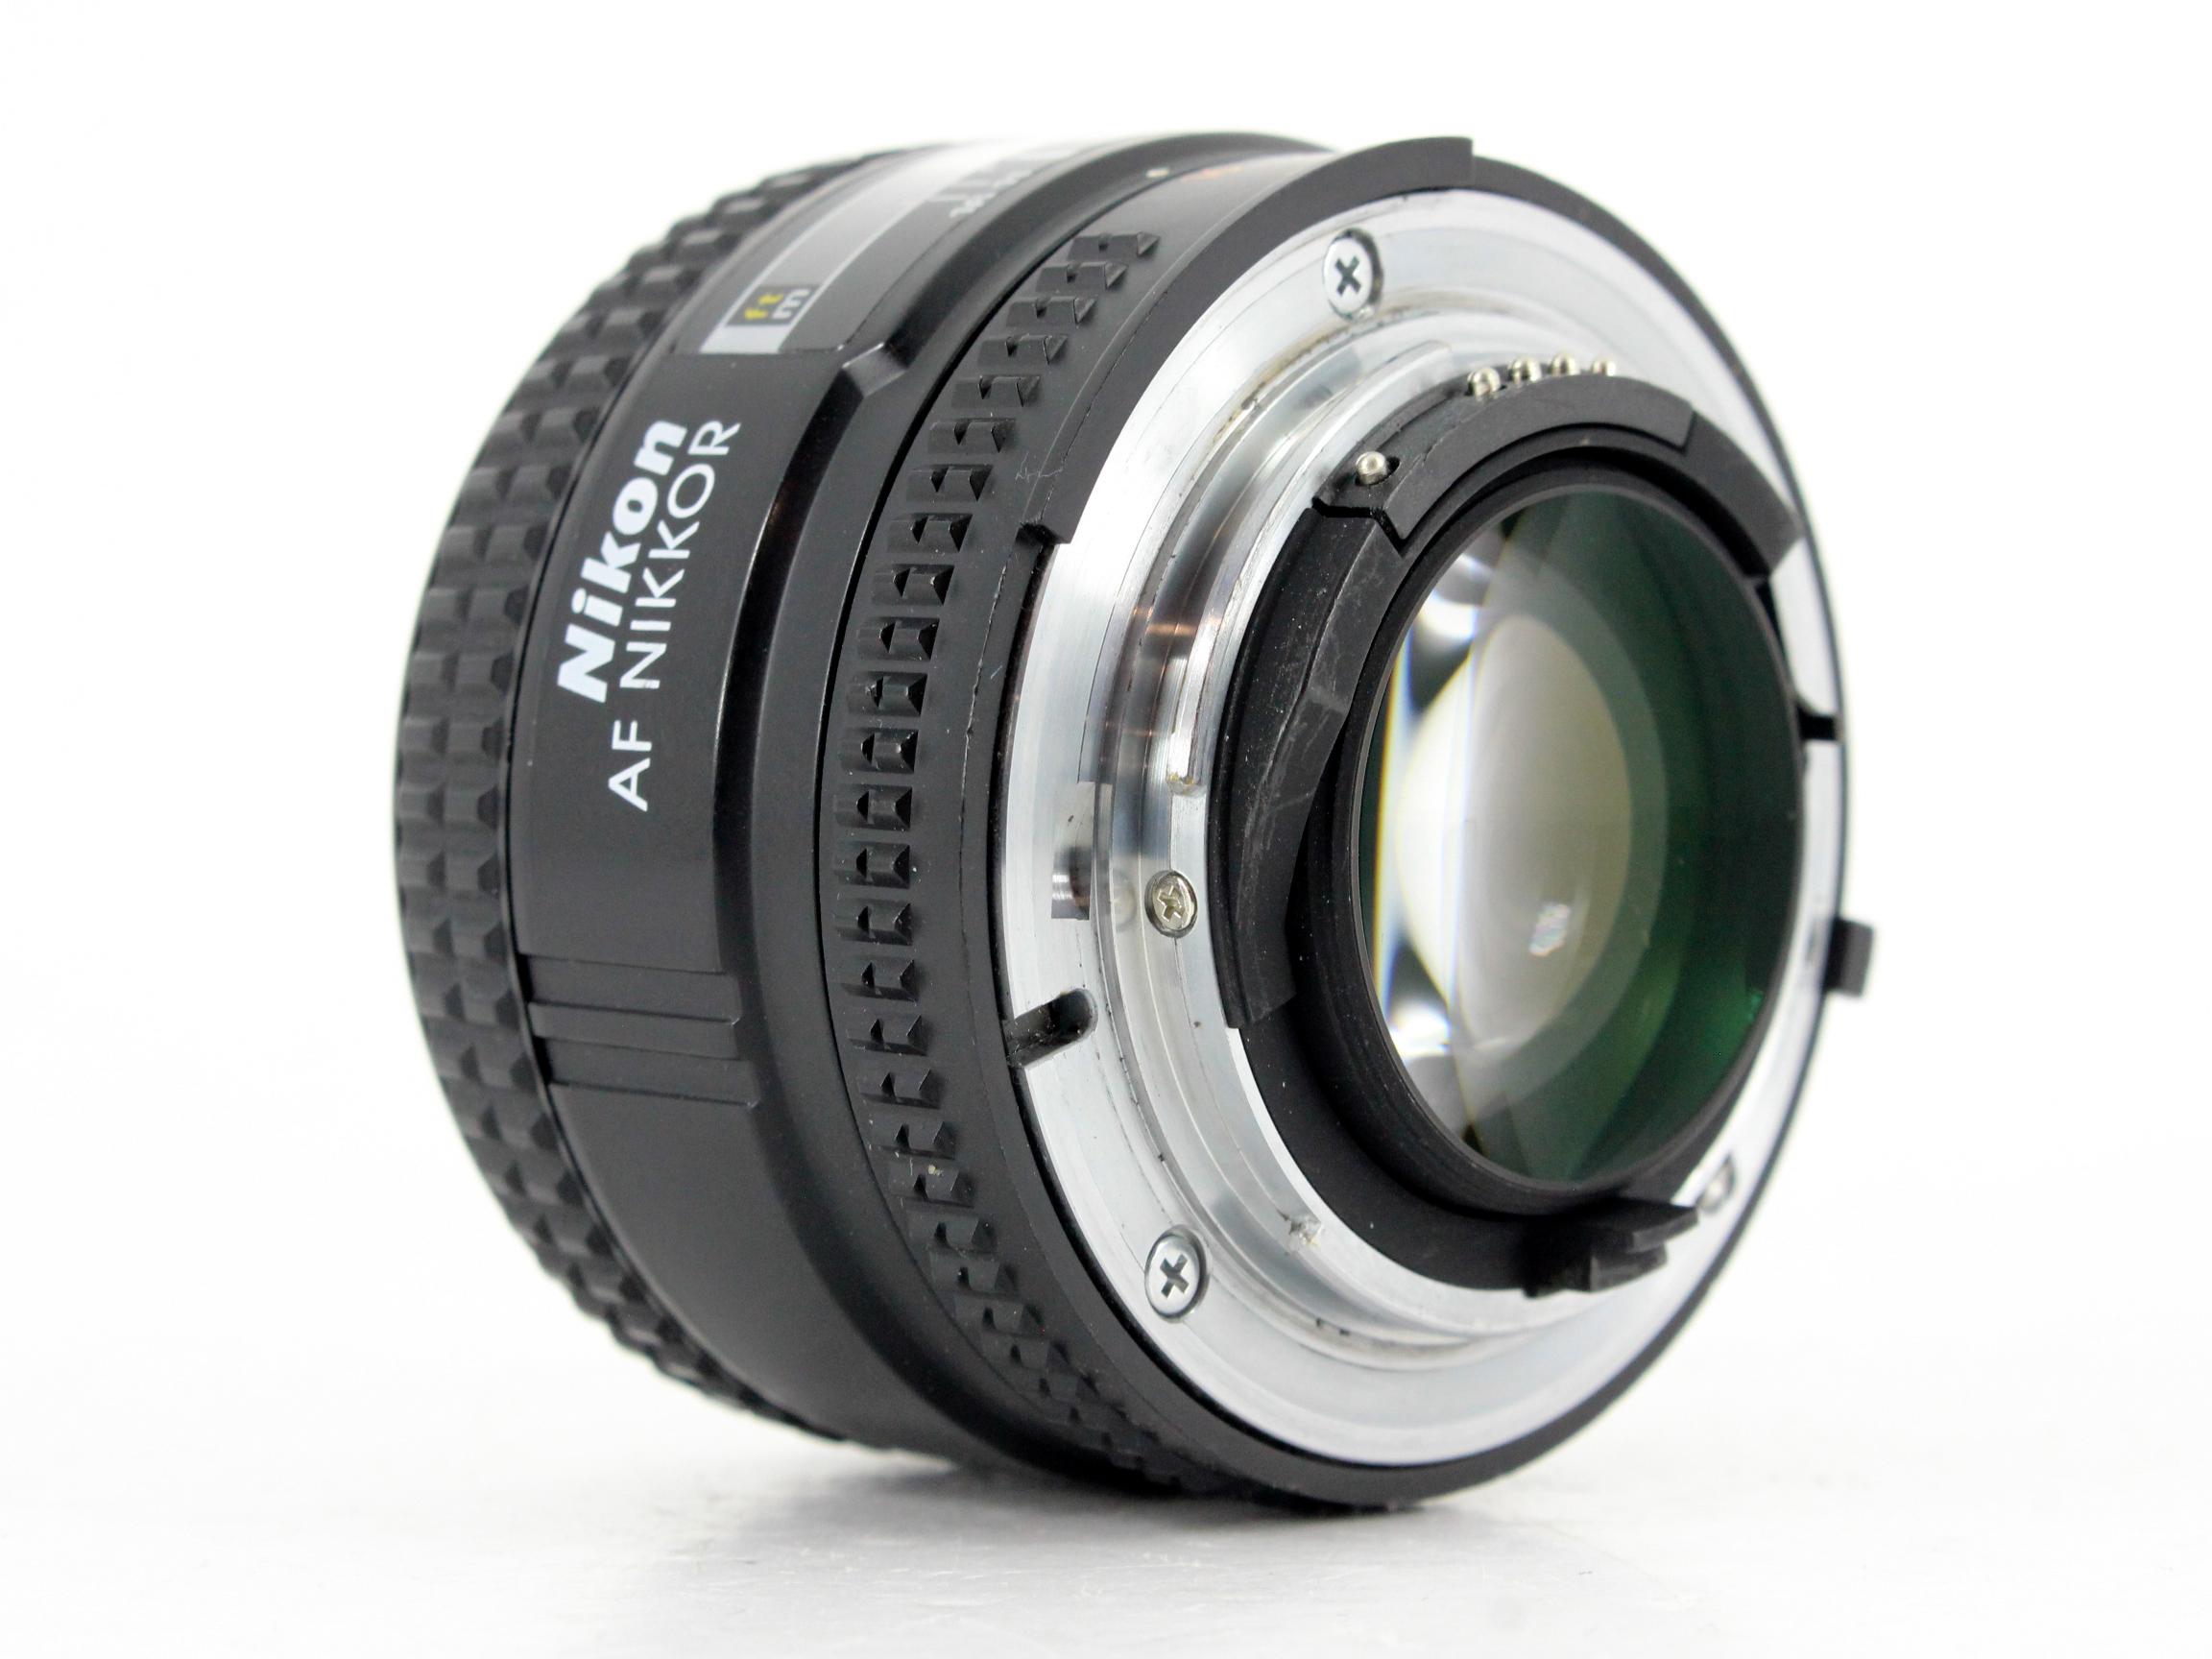 Nikon AF NIKKOR 50mm F1.4